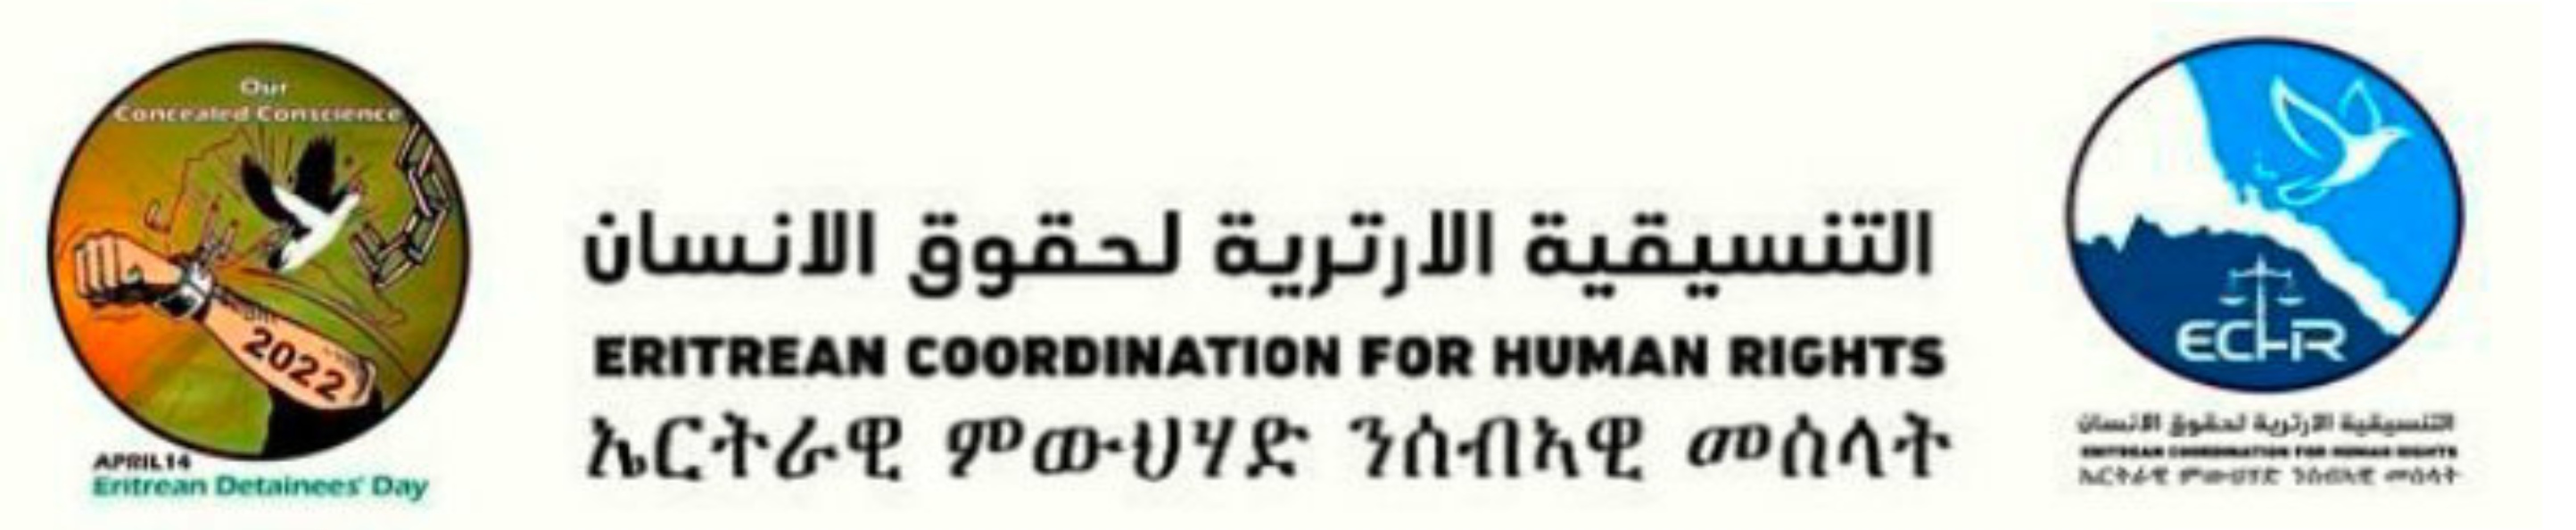 ብምኽንያት ኣህጉራዊ መዓልቲ ሰብኣዊ መሰላት ዝወጸ ጋዜጣዊ መግለጺ፡ Press statement by Eritrean Coordination for Human Rights – ECHR, on International Human Rights Day.